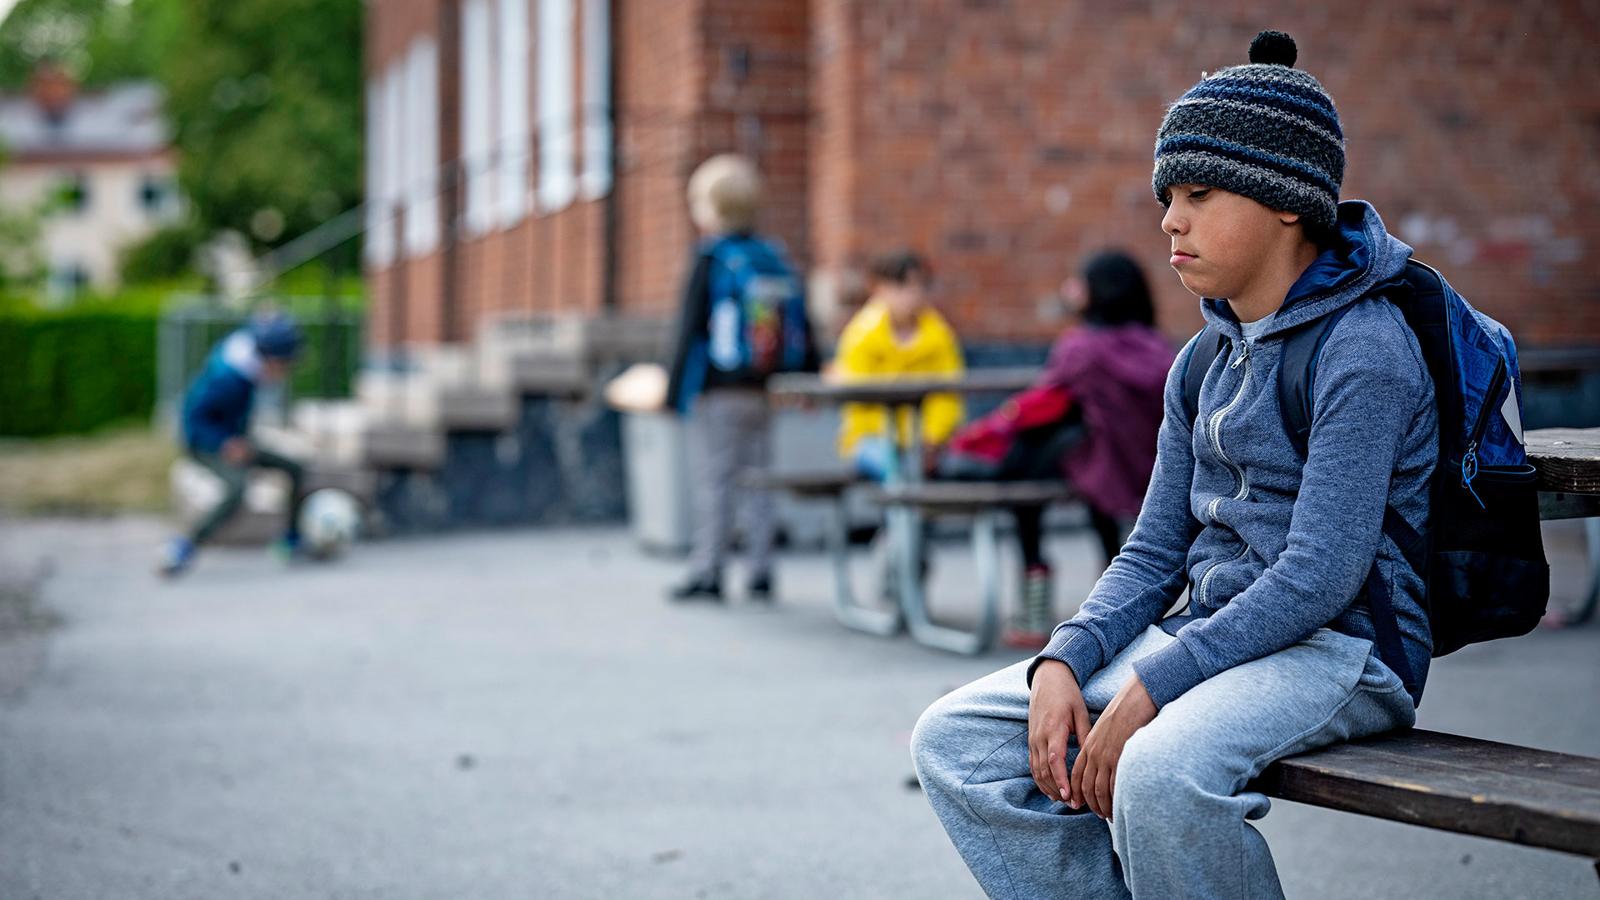 En ung pojke sitter ensam på en bänk på en skolgård. I bakgrunden syns fyra andra barn som leker.